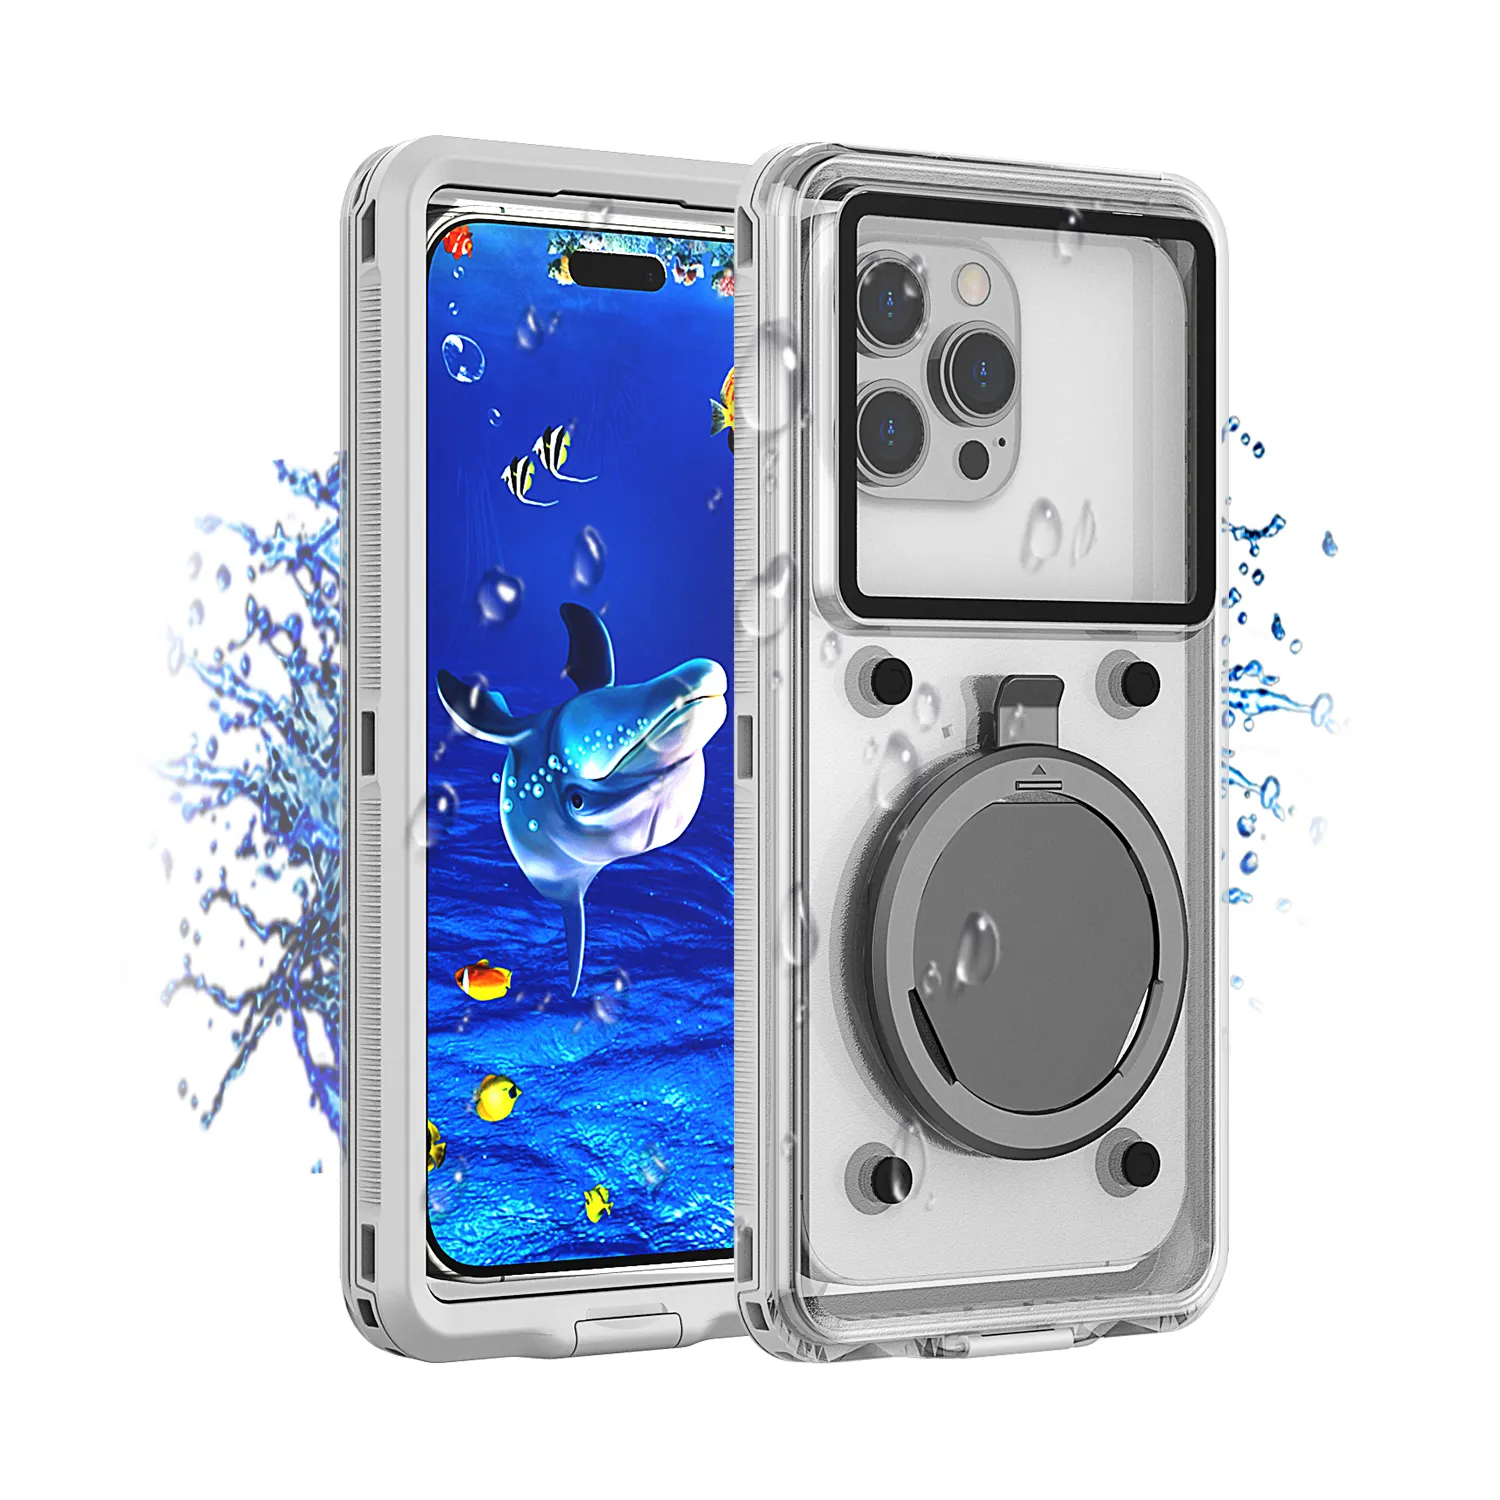 TPU PC nuoto all'aperto sott'acqua trasparente universale custodia per telefono impermeabile antiurto custodia per cellulare